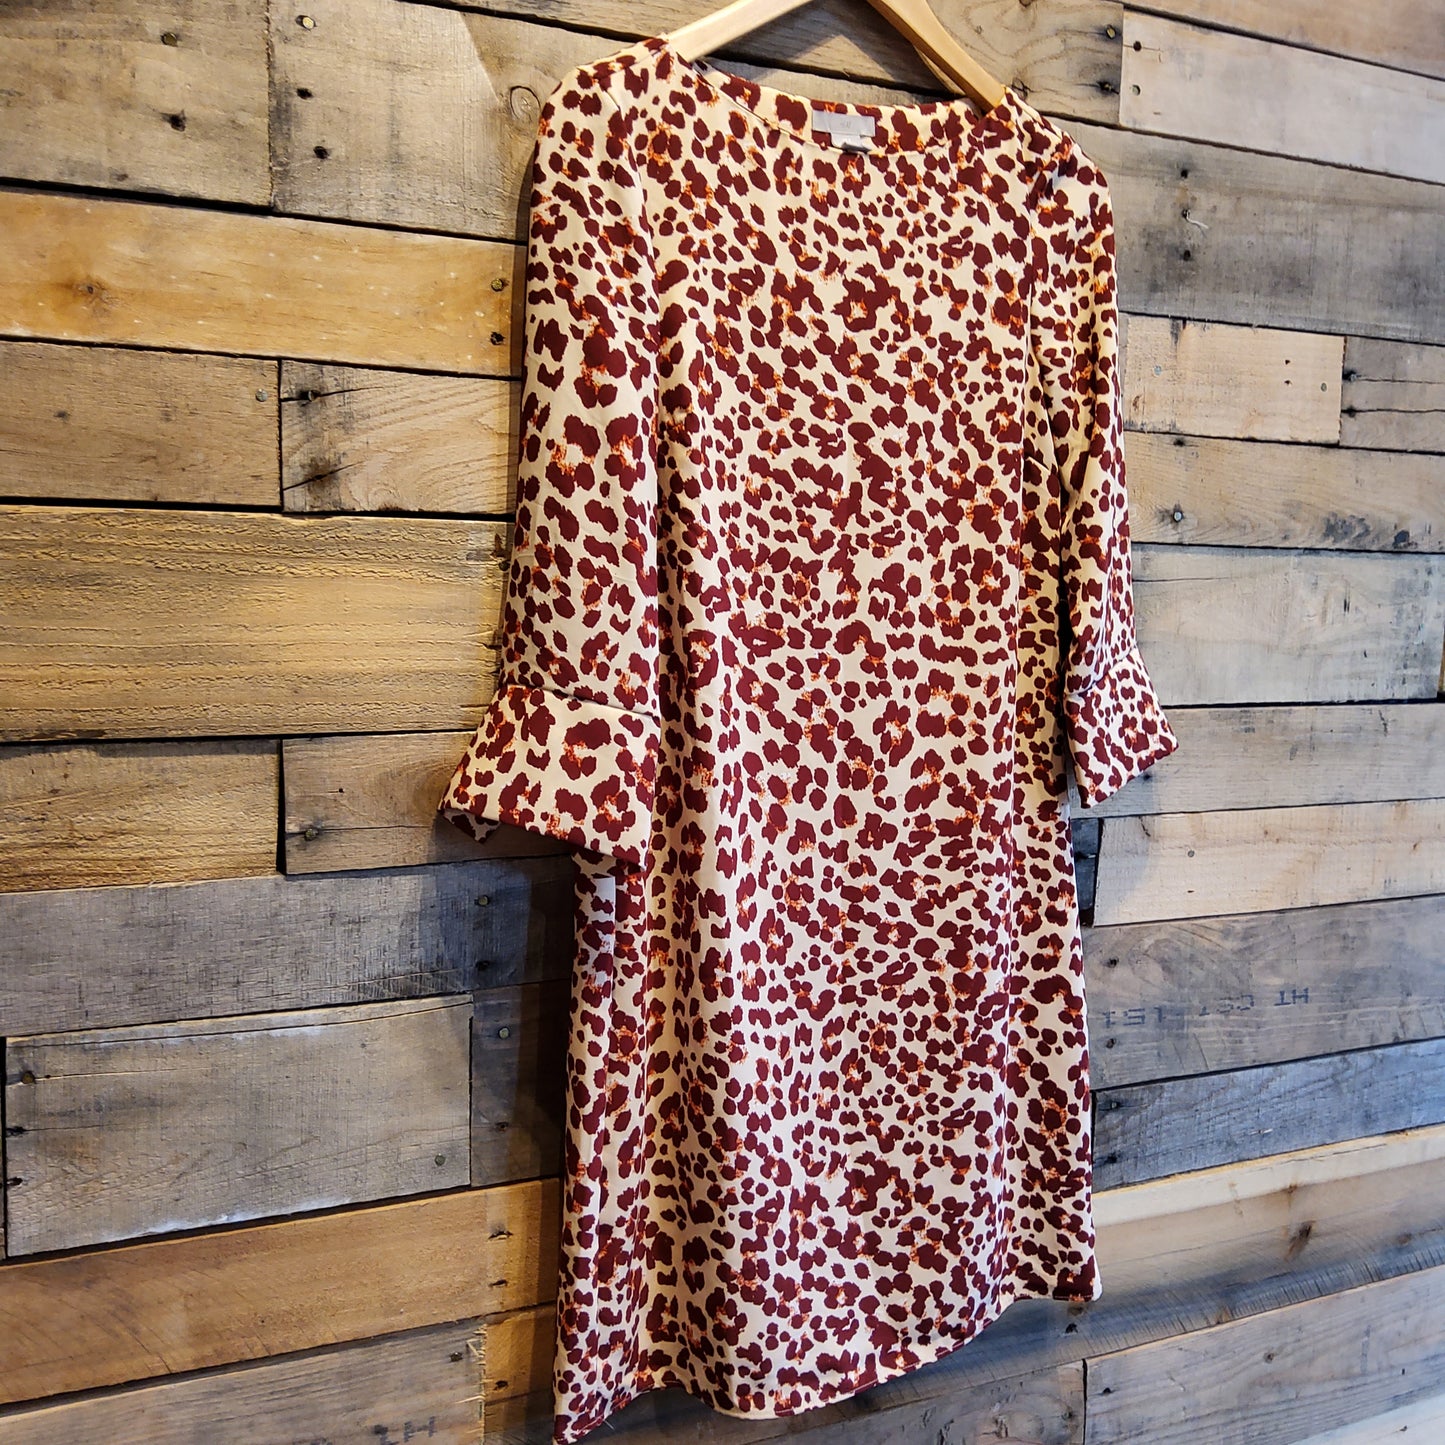 H&M Leopard Print Dress Sz 2